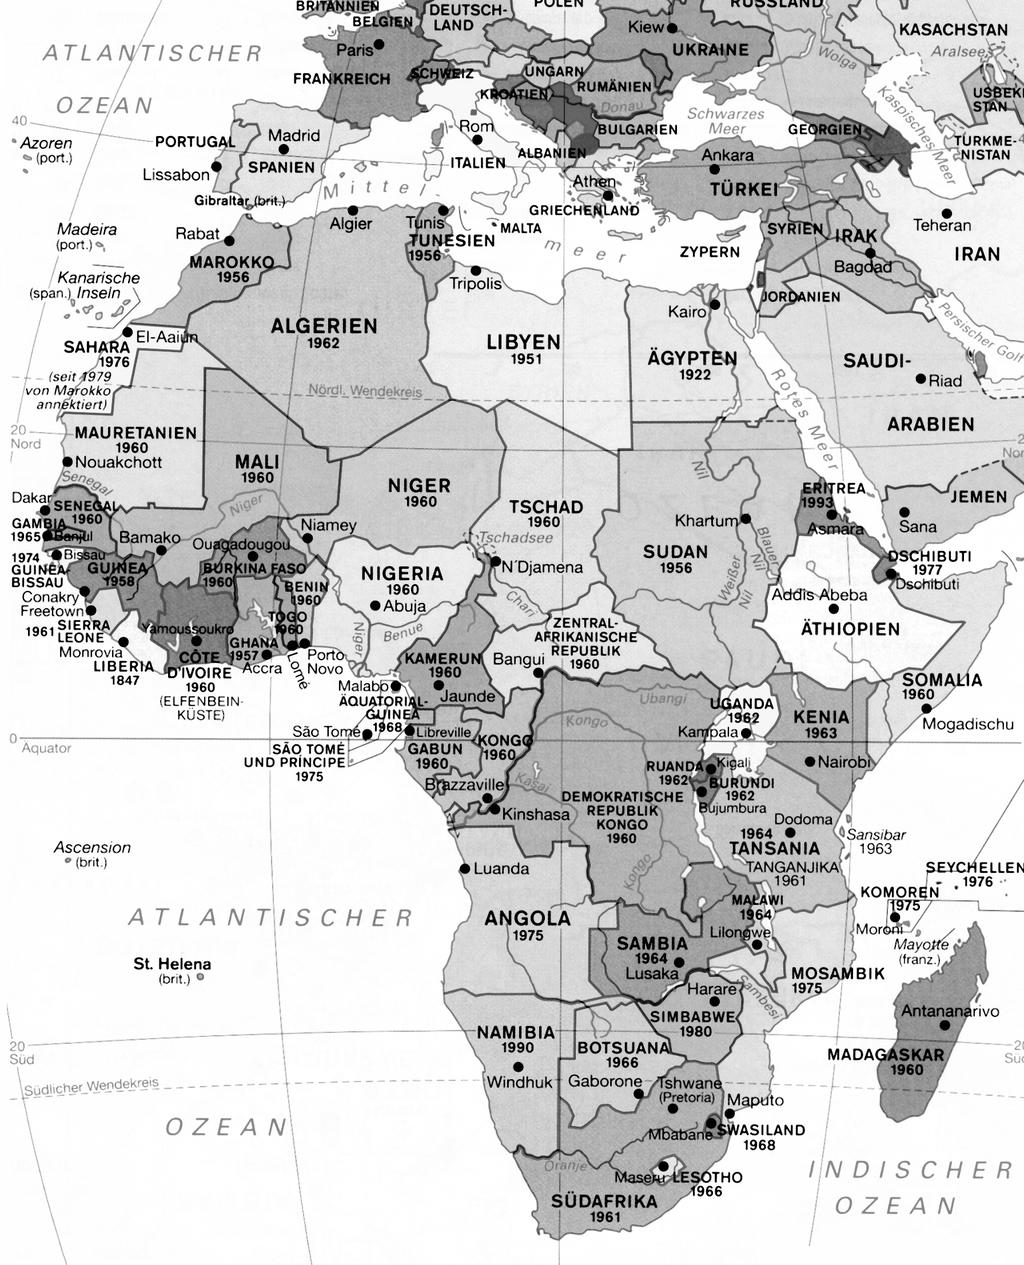 8 EK Lösung Die geogra sche und politische Gliederung Afrikas! Fläche: (22 % der Land äche der Erde). Ein Drittel besteht aus Wüsten, 30,3 Mio. km2 wovon die mit 9 Mio.